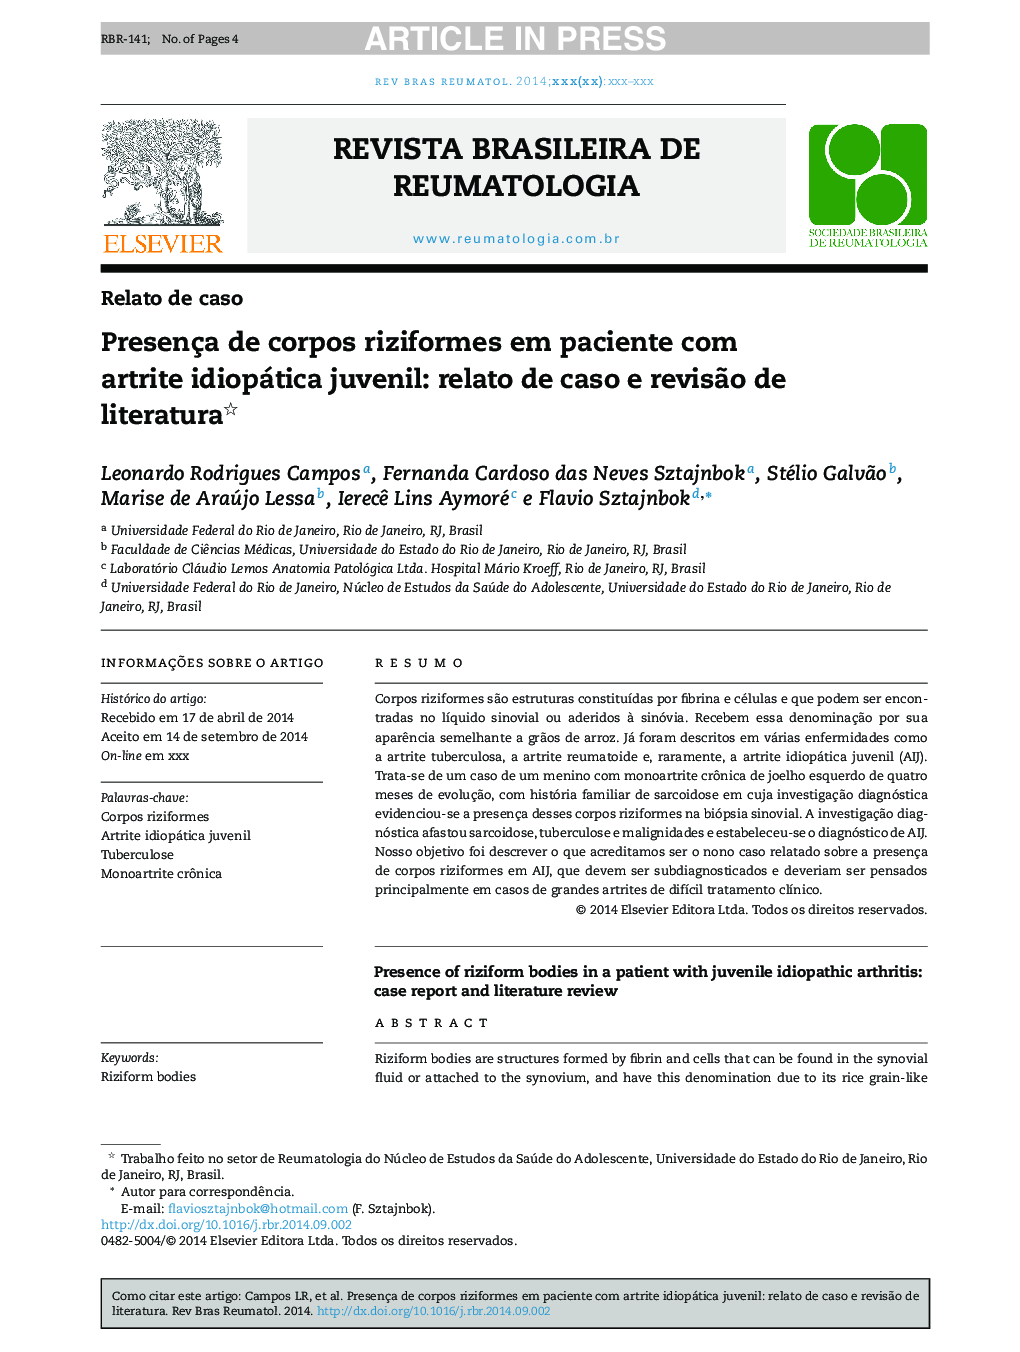 Presença de corpos riziformes em paciente com artrite idiopática juvenil: relato de caso e revisÃ£o de literatura